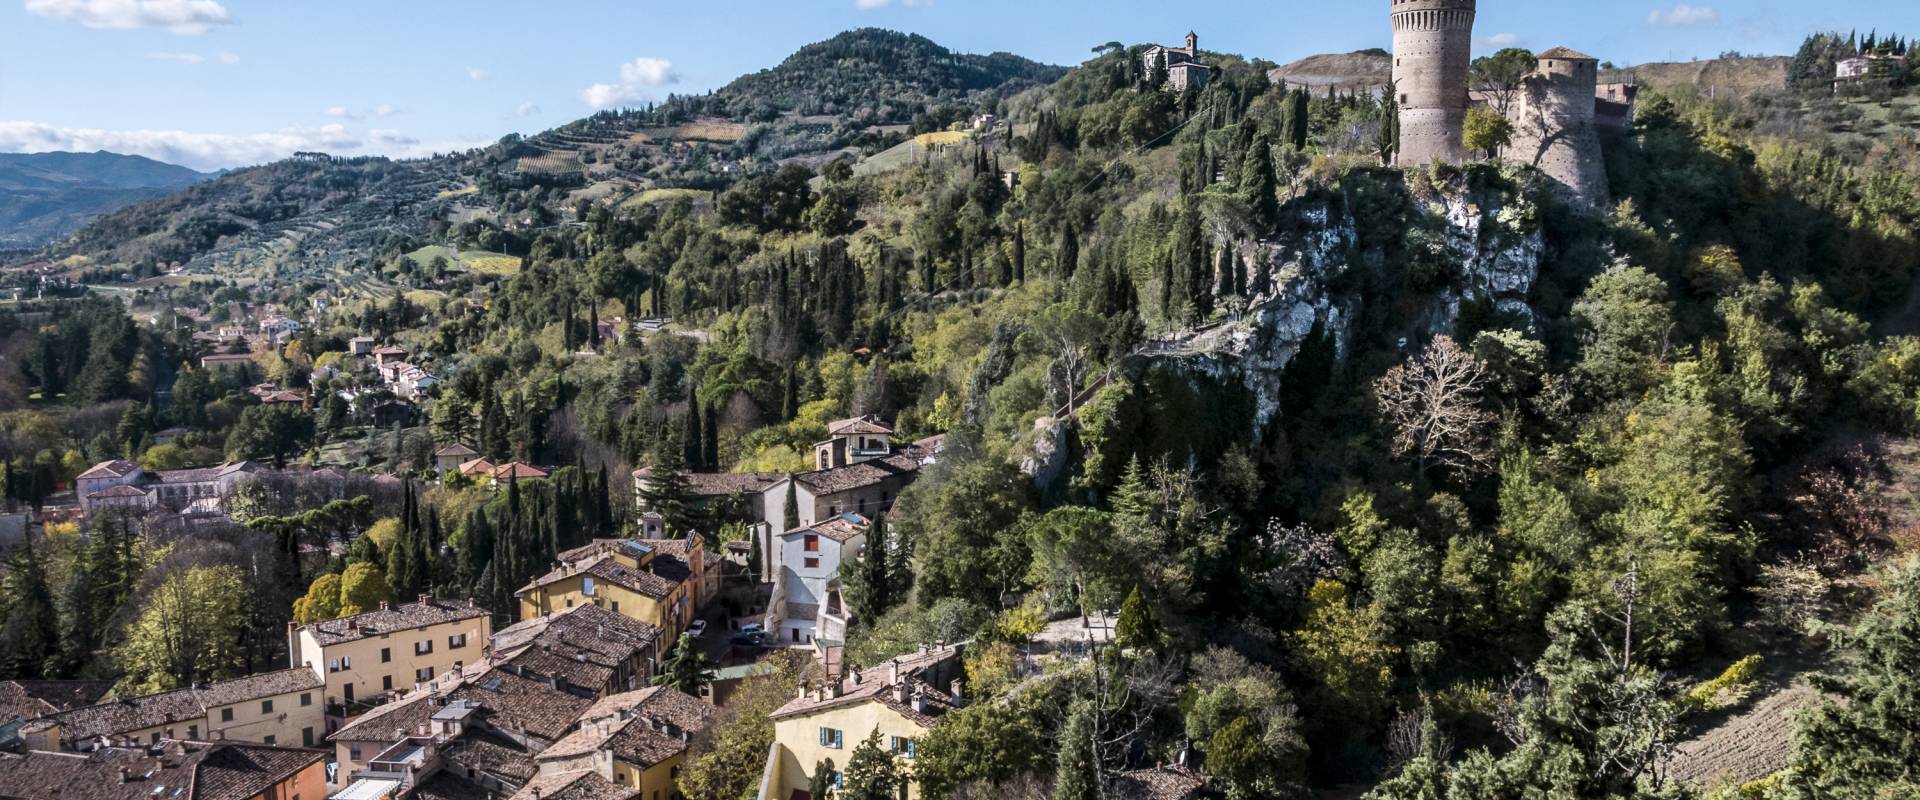 " Brisighella - La Rocca " photo by Vanni Lazzari